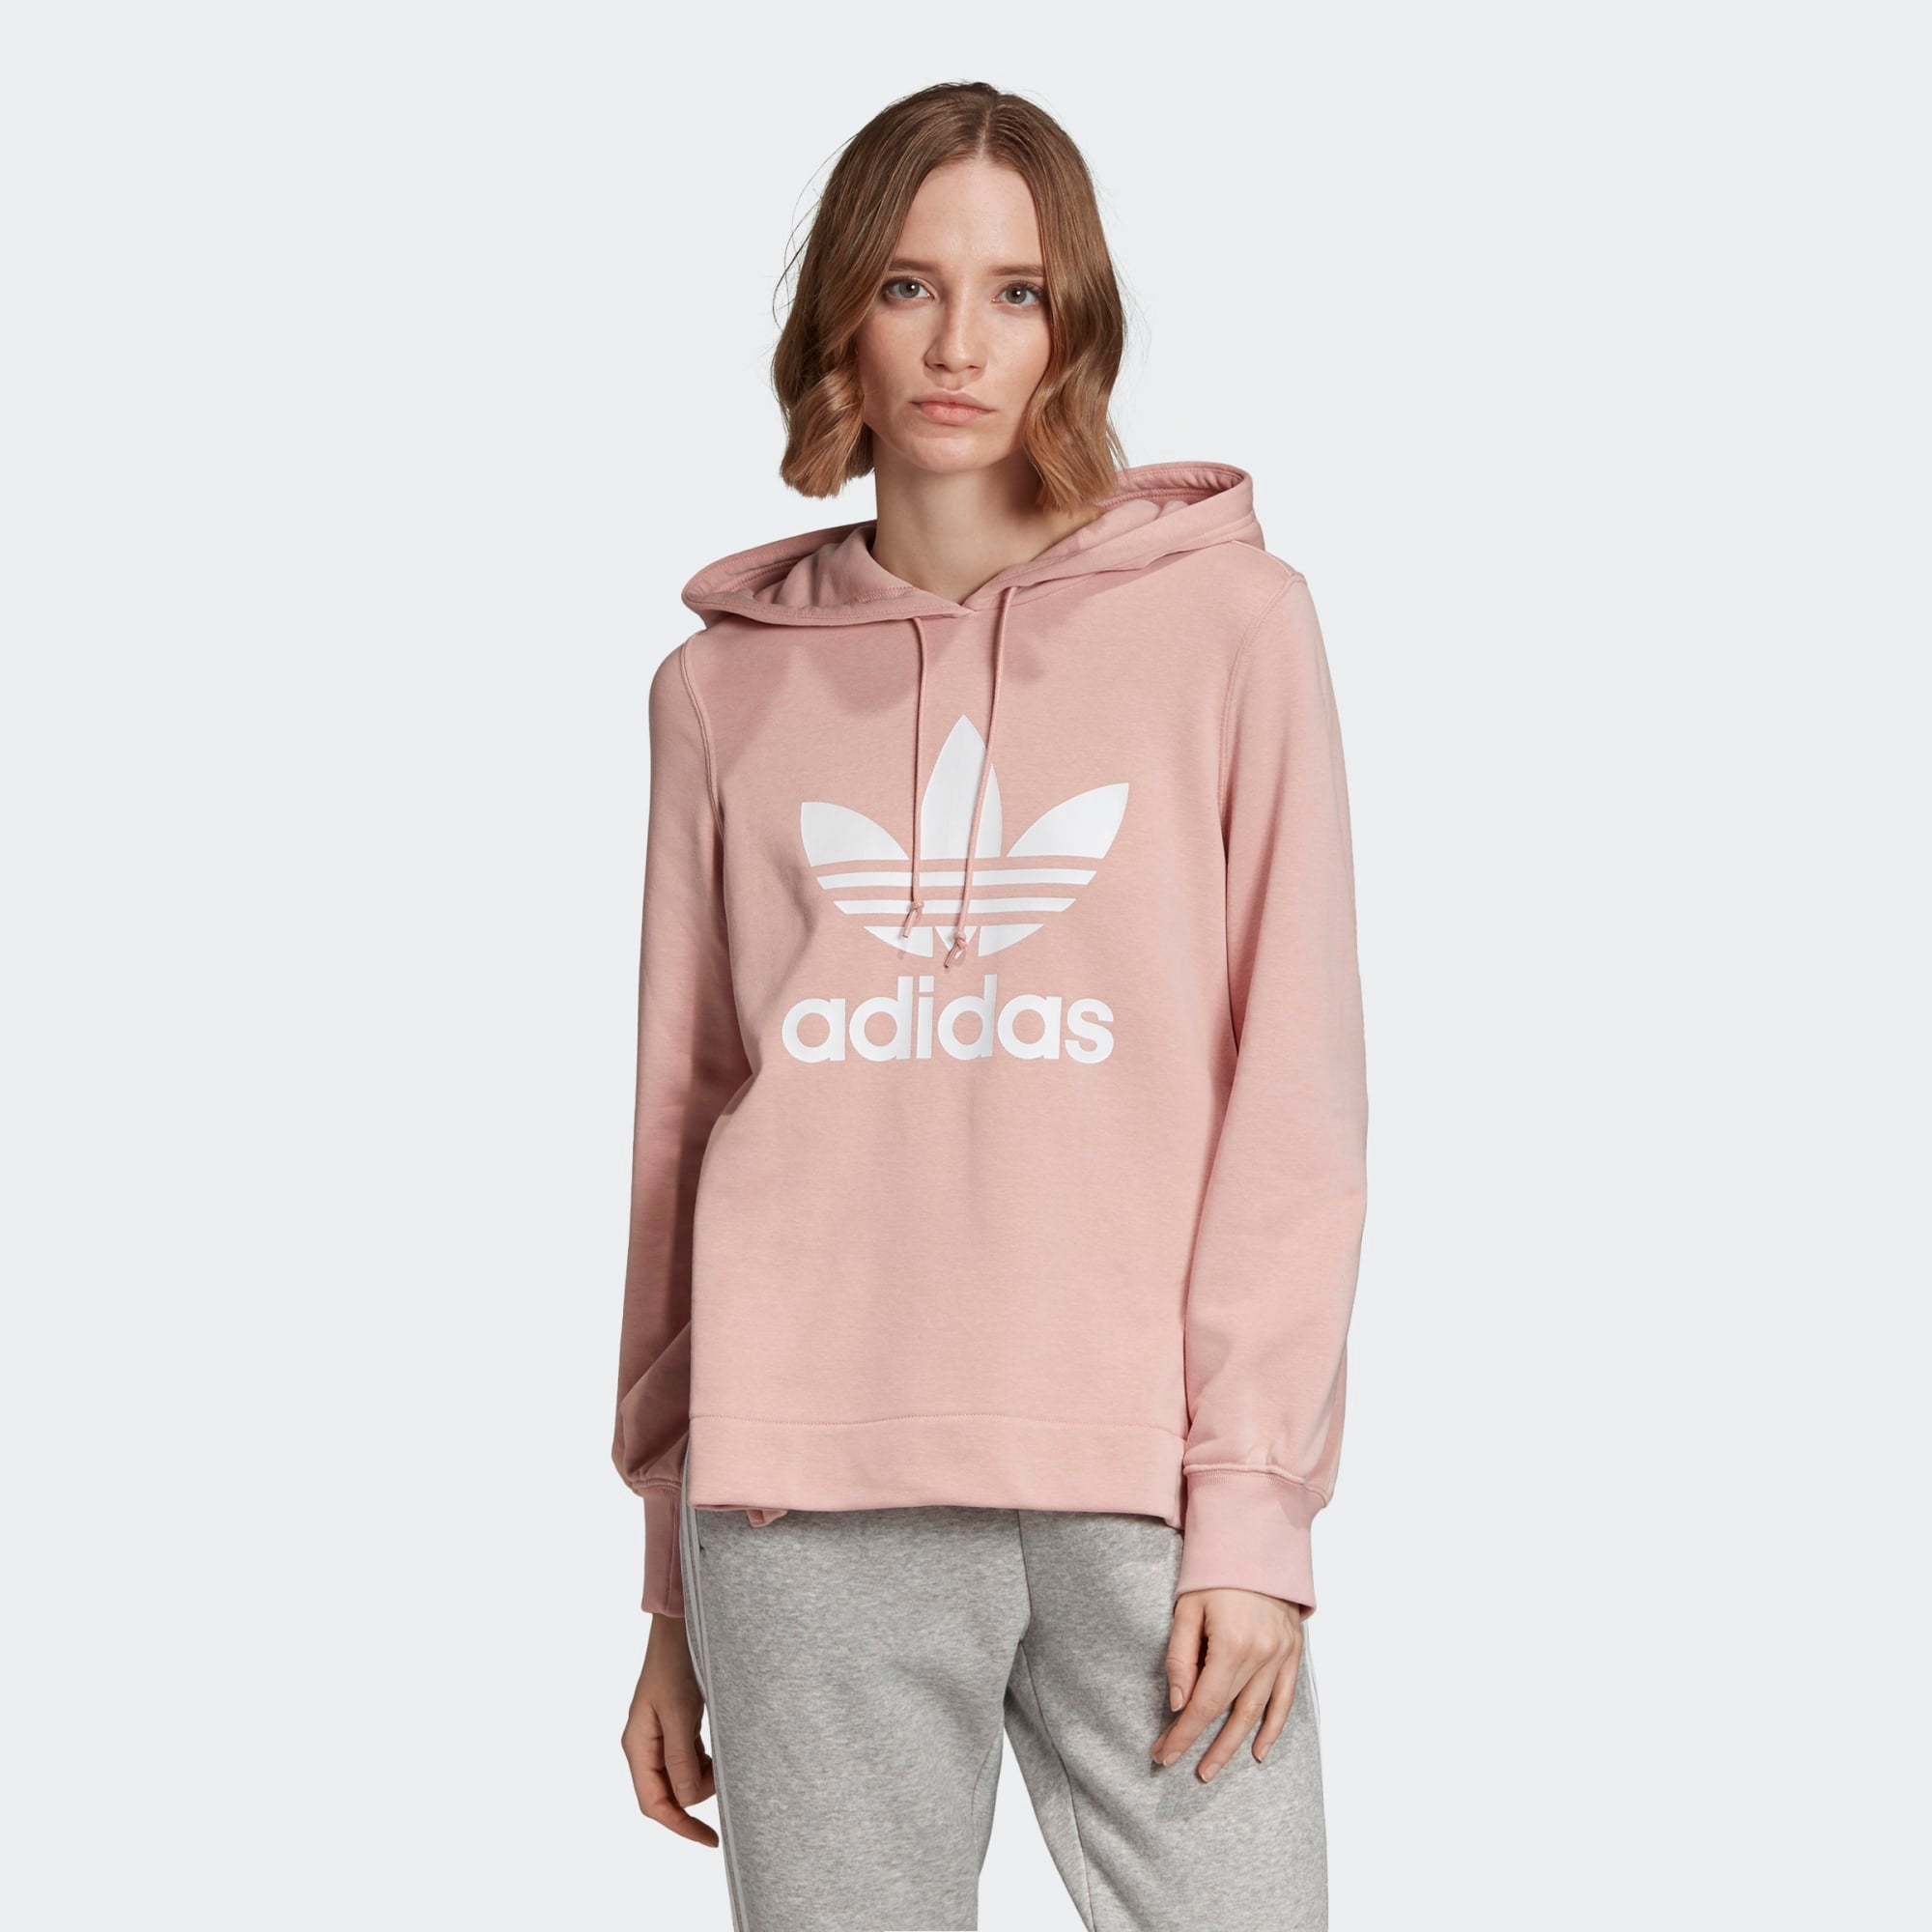 adidas pink spirit hoodie